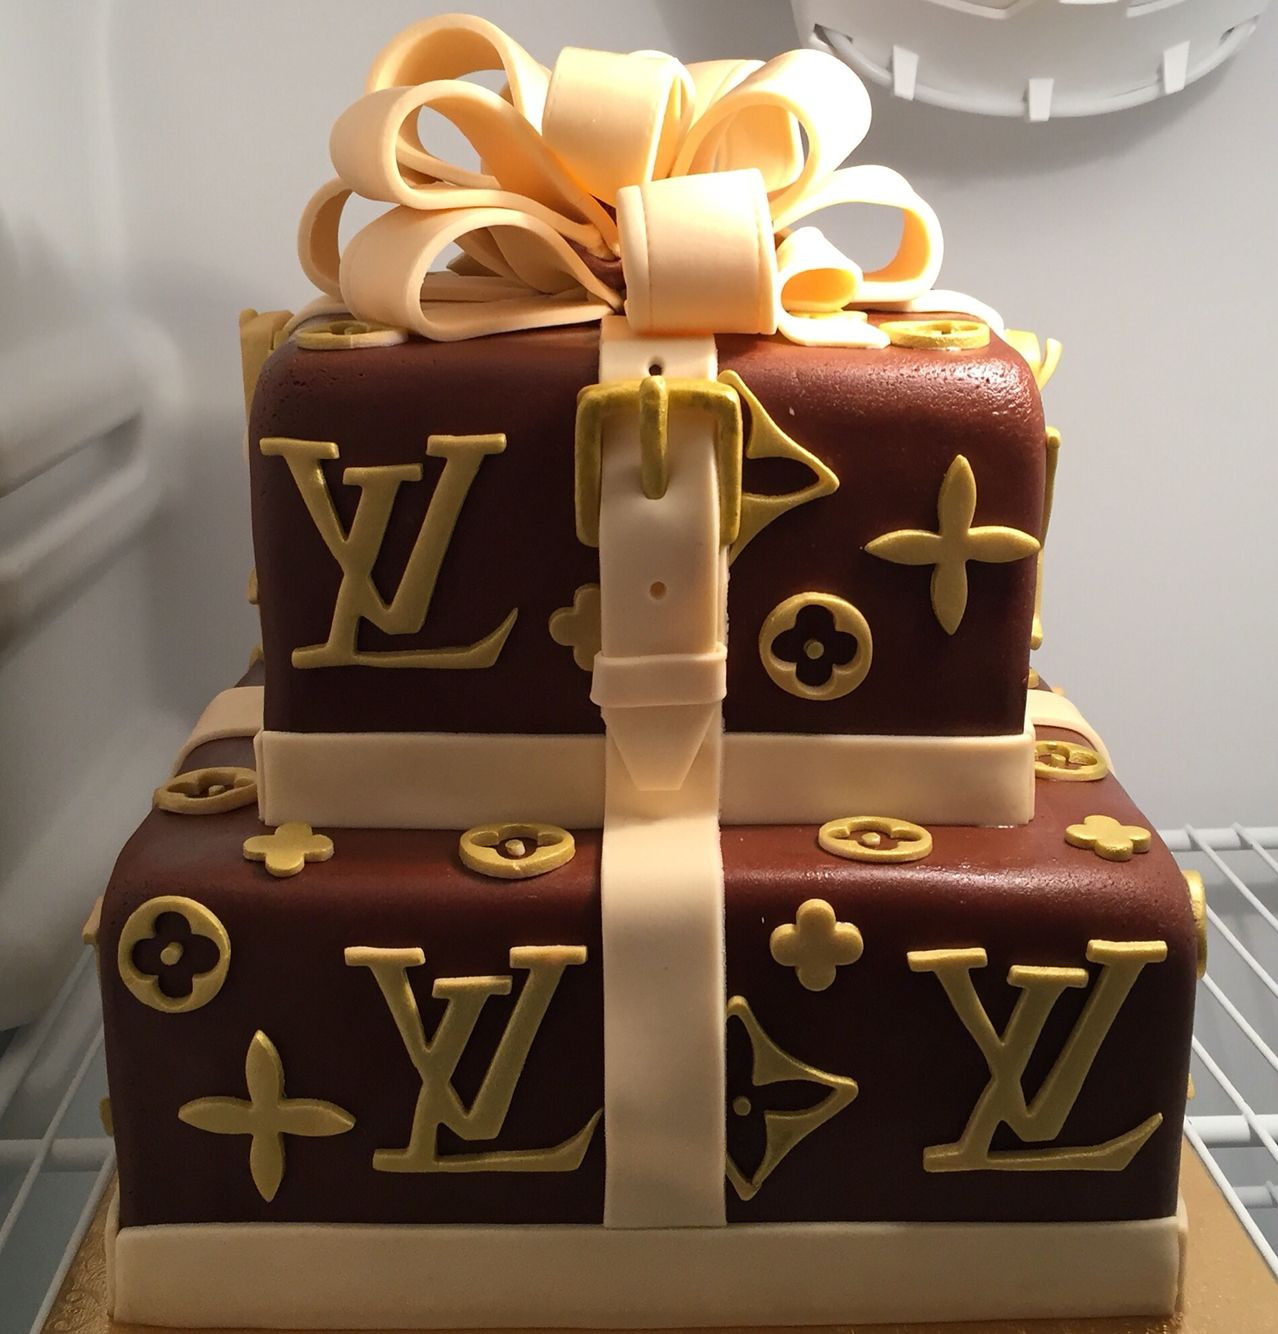 Louis Vuitton Birthday Cakes
 louis vuitton birthday cake Cake Design